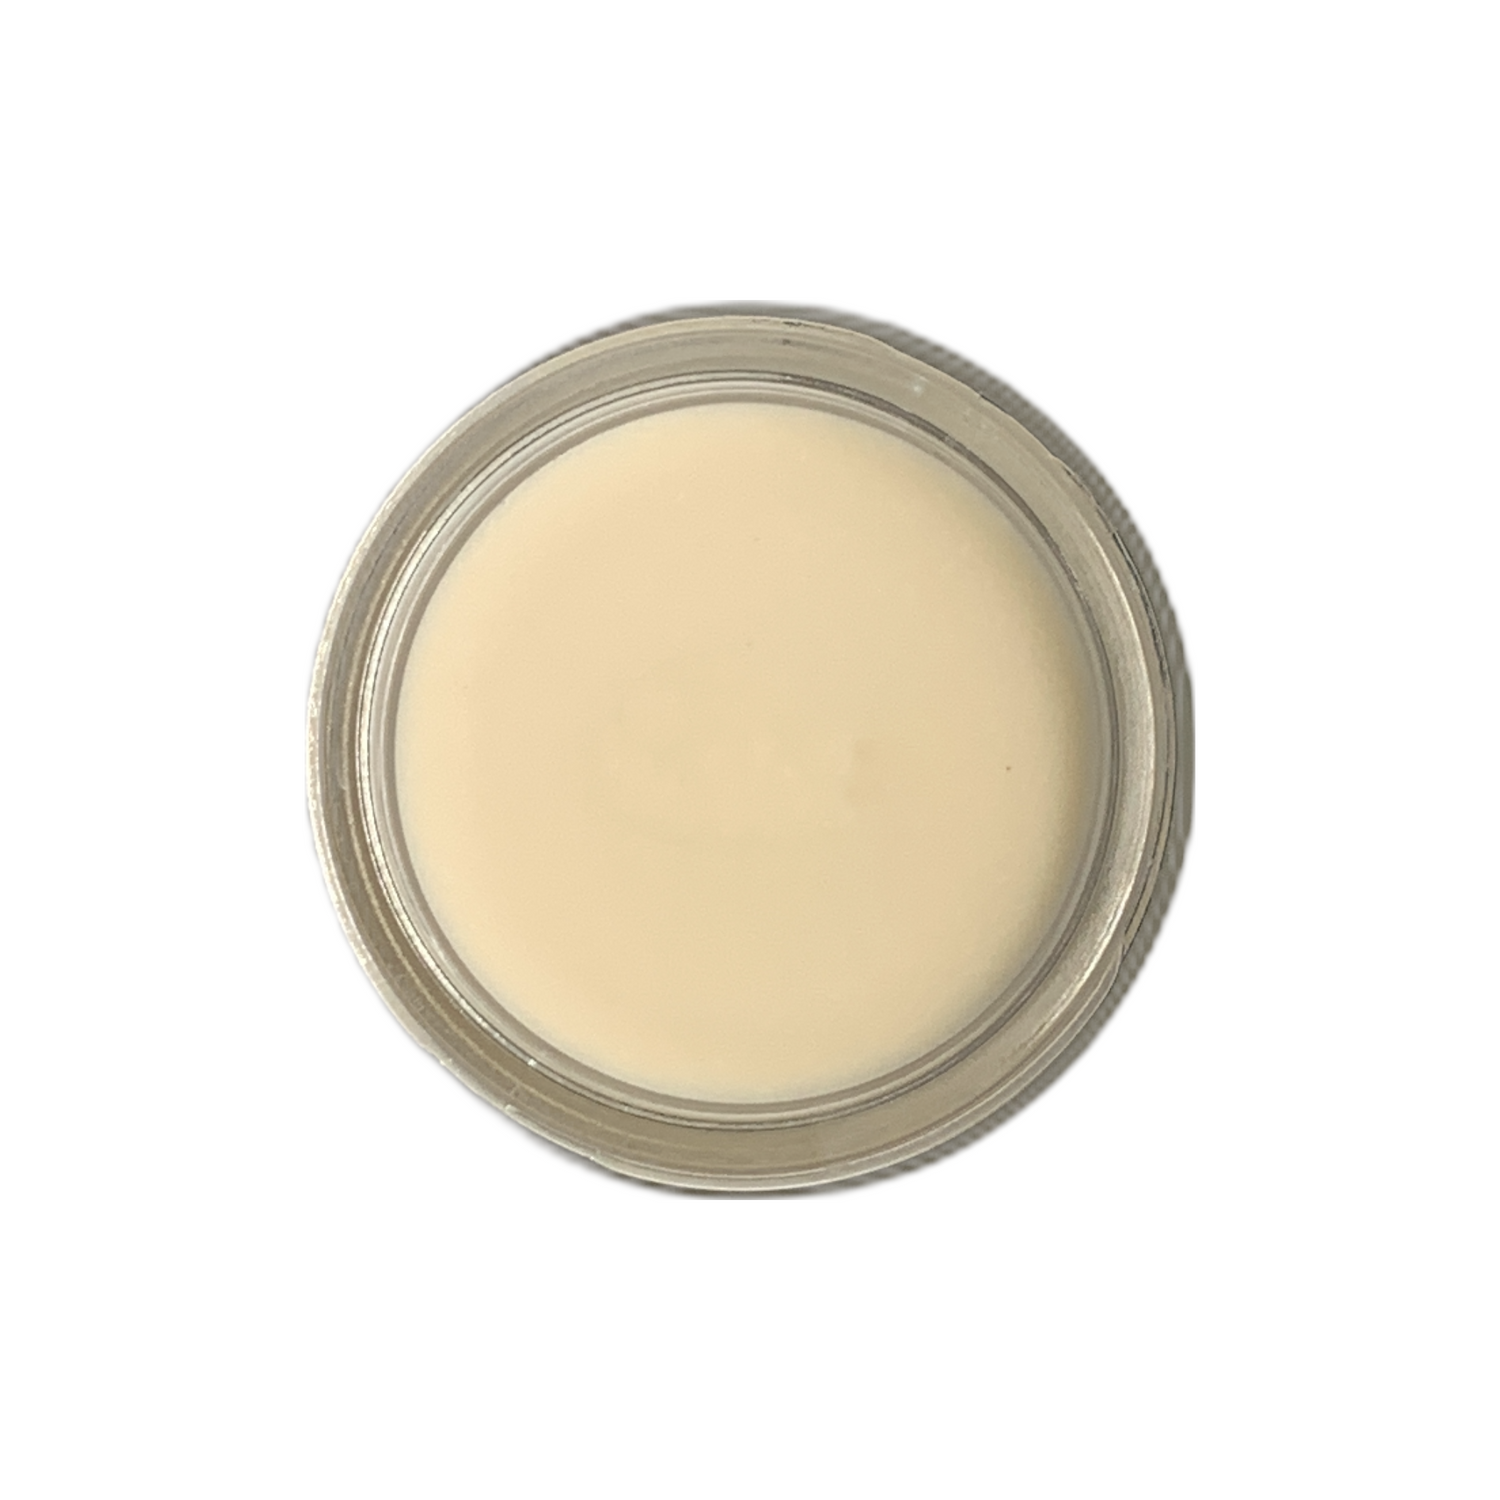 crème calm - anti-inflammatory facial cream